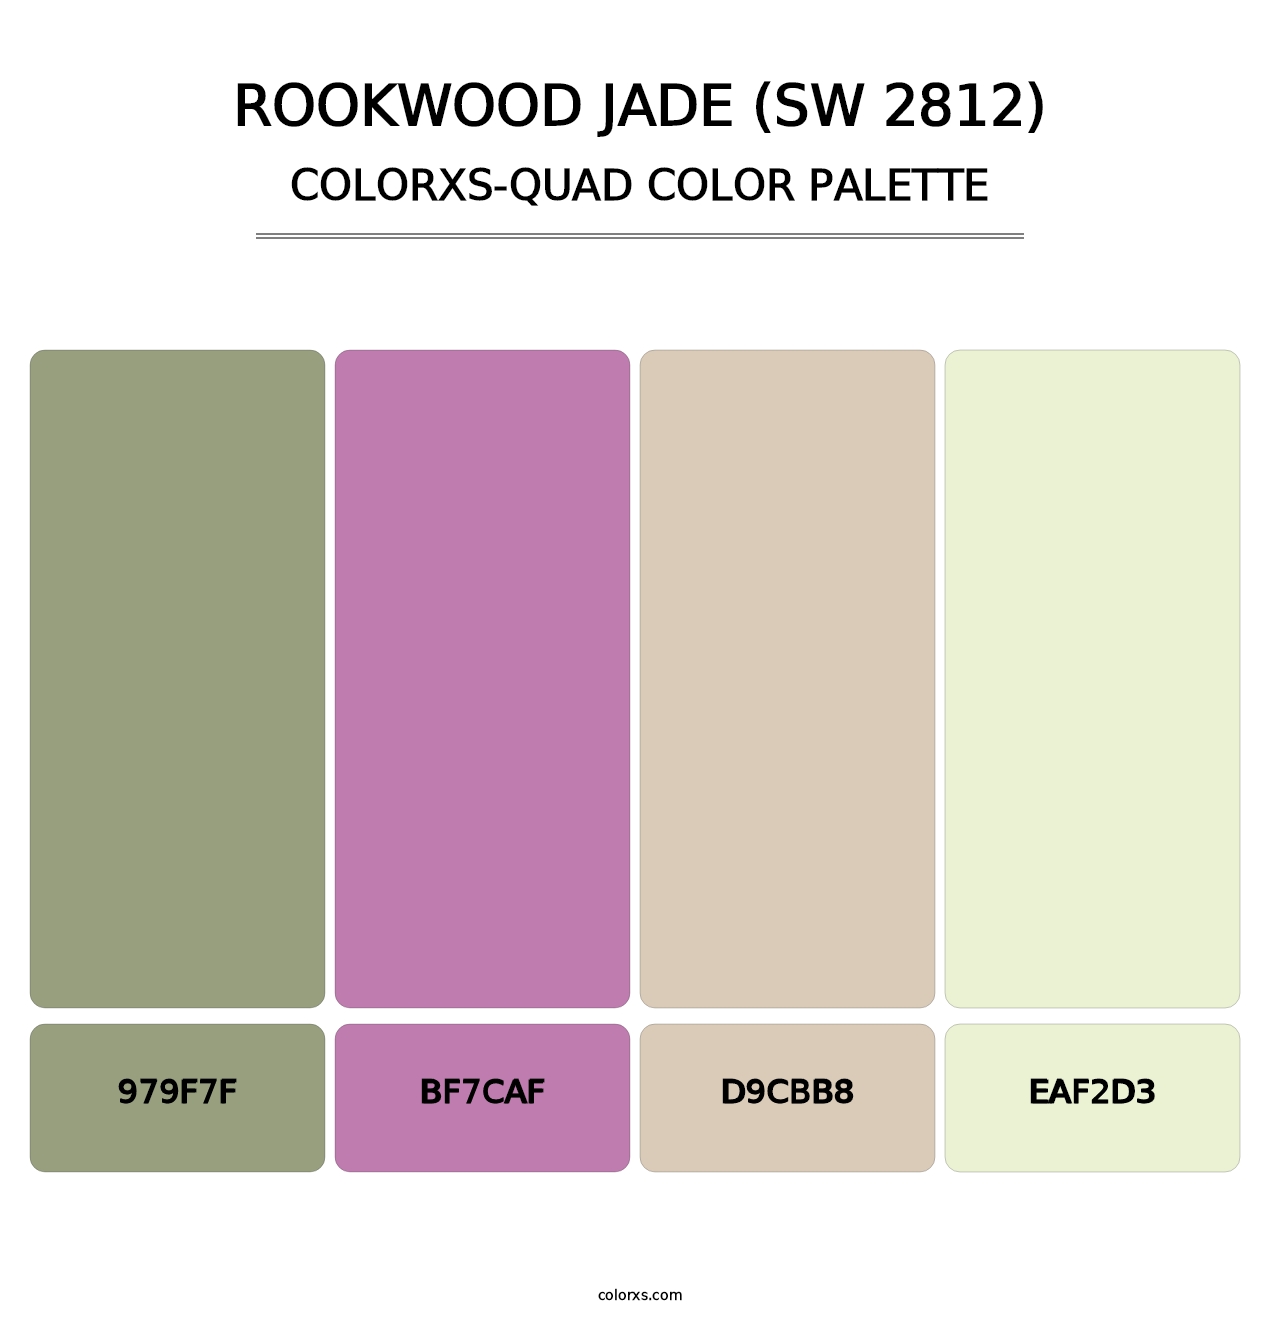 Rookwood Jade (SW 2812) - Colorxs Quad Palette